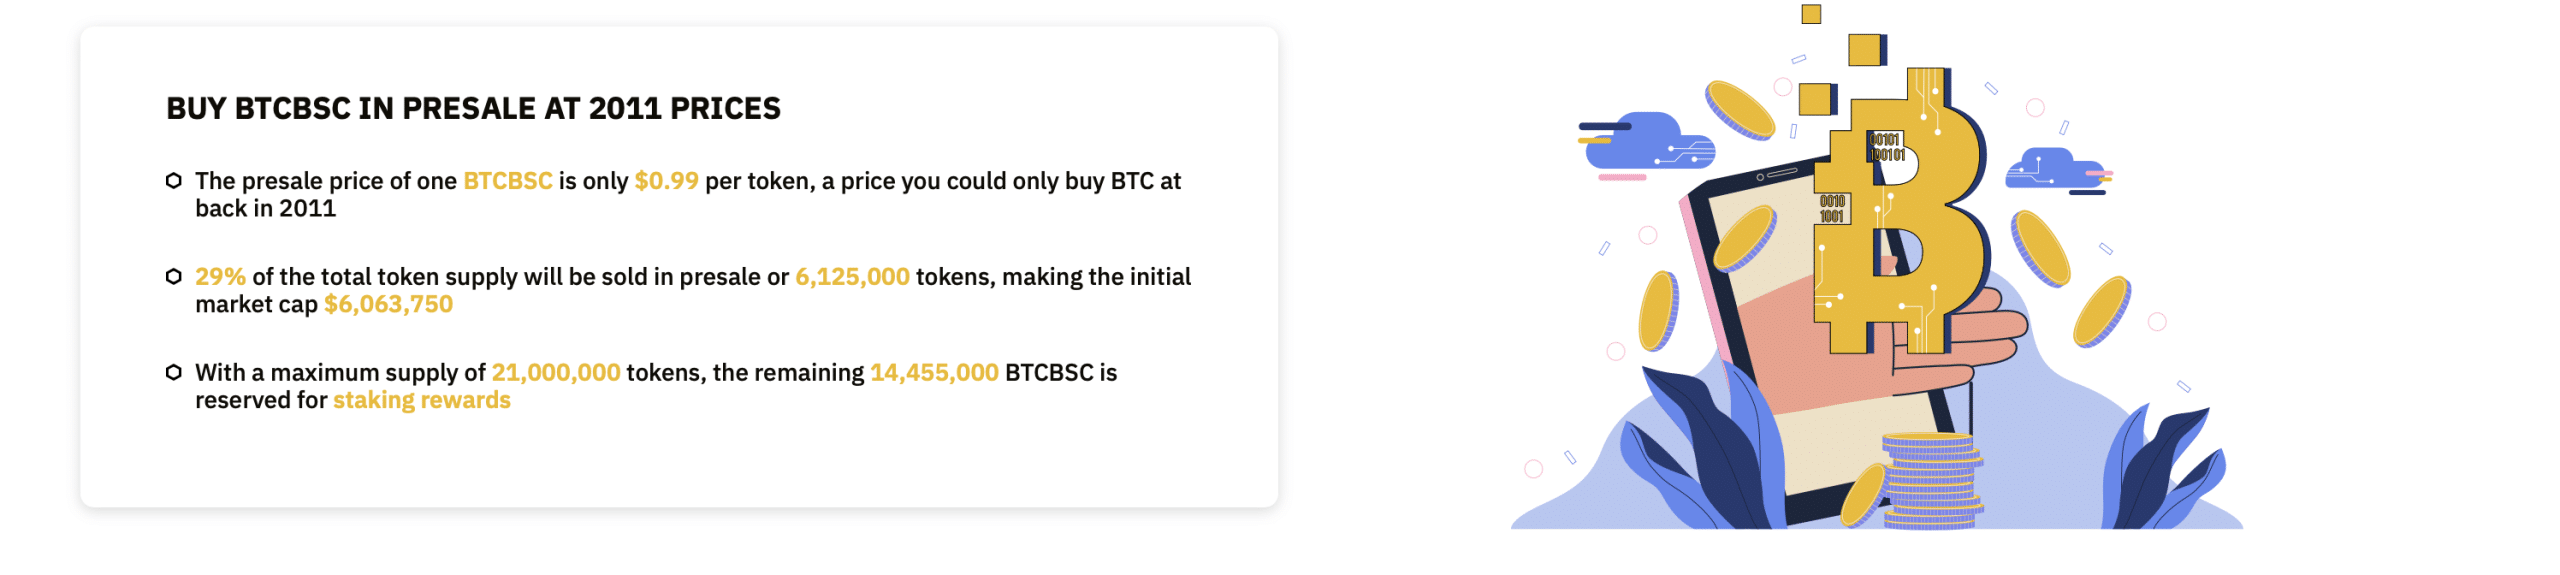 Bitcoin BSC 2011